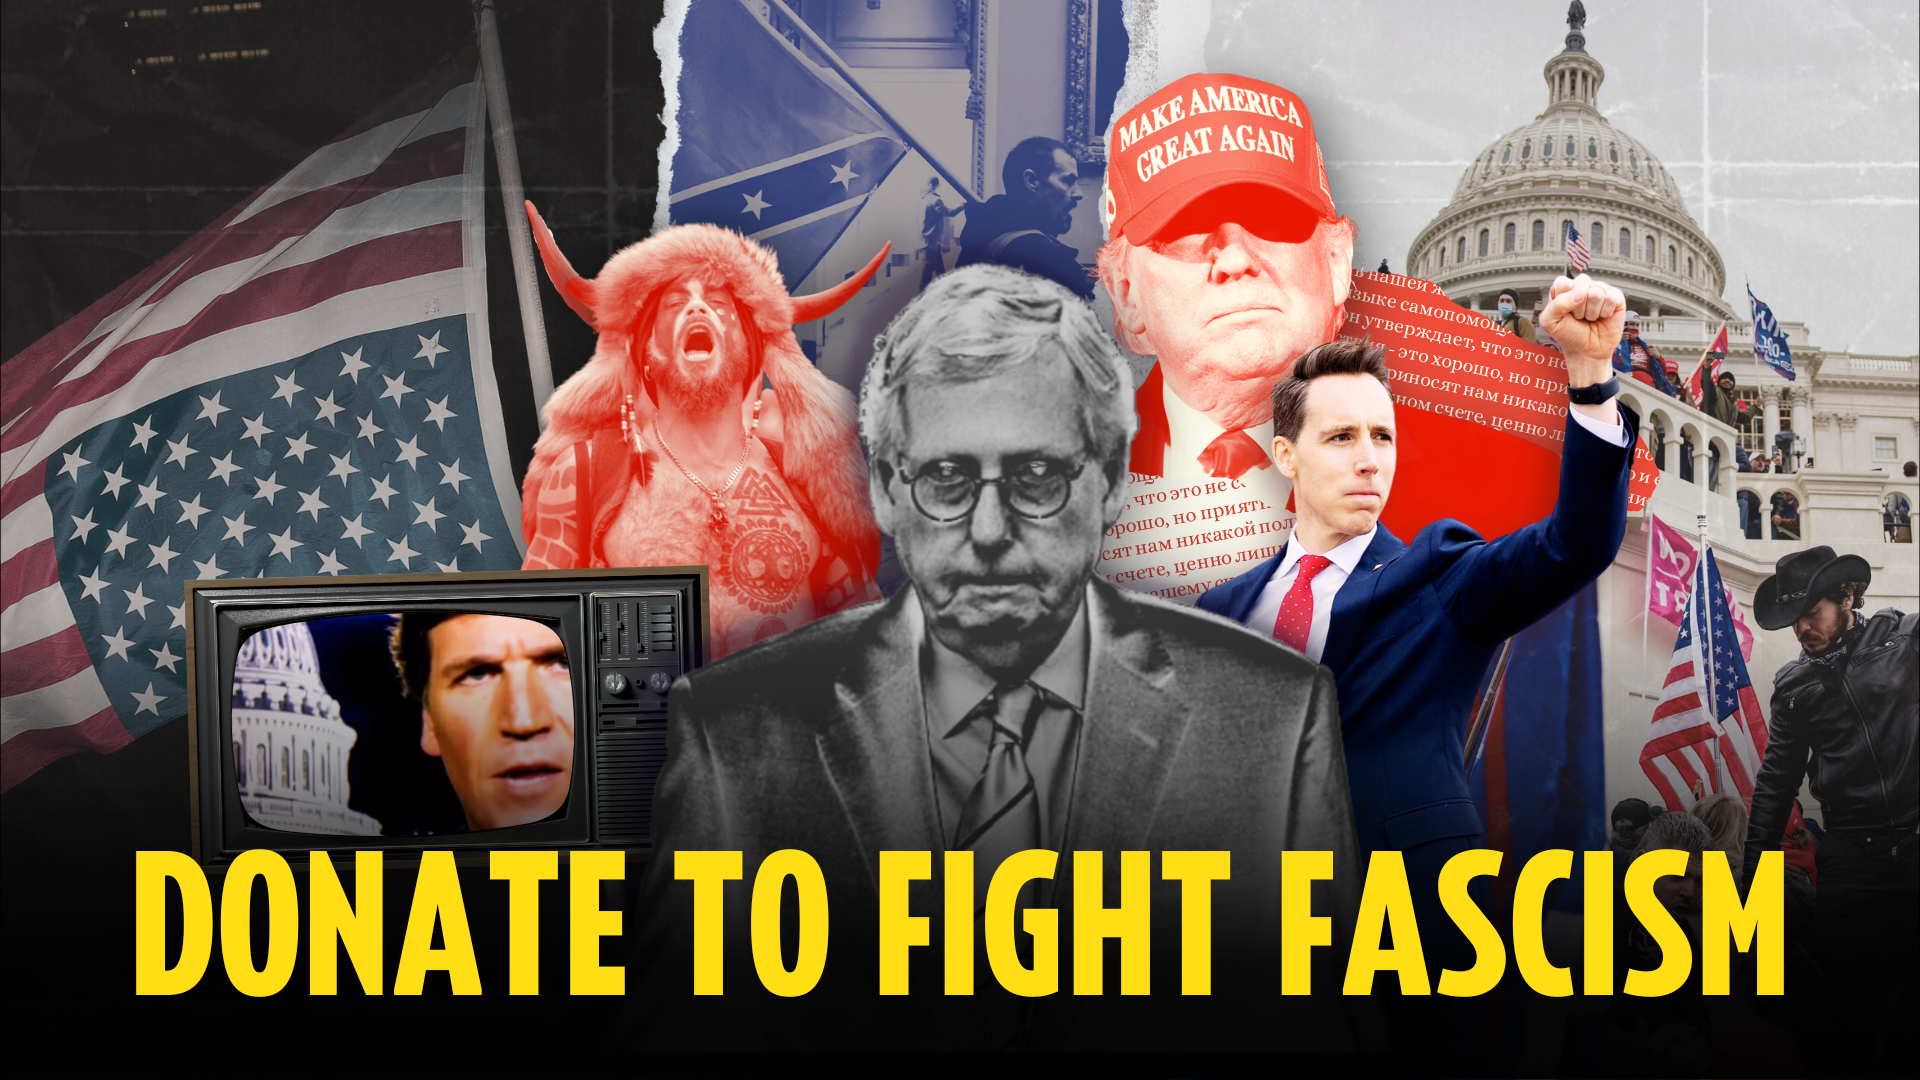 Faites un don pour combattre le fascisme ; Collage de symboles et de dirigeants fascistes